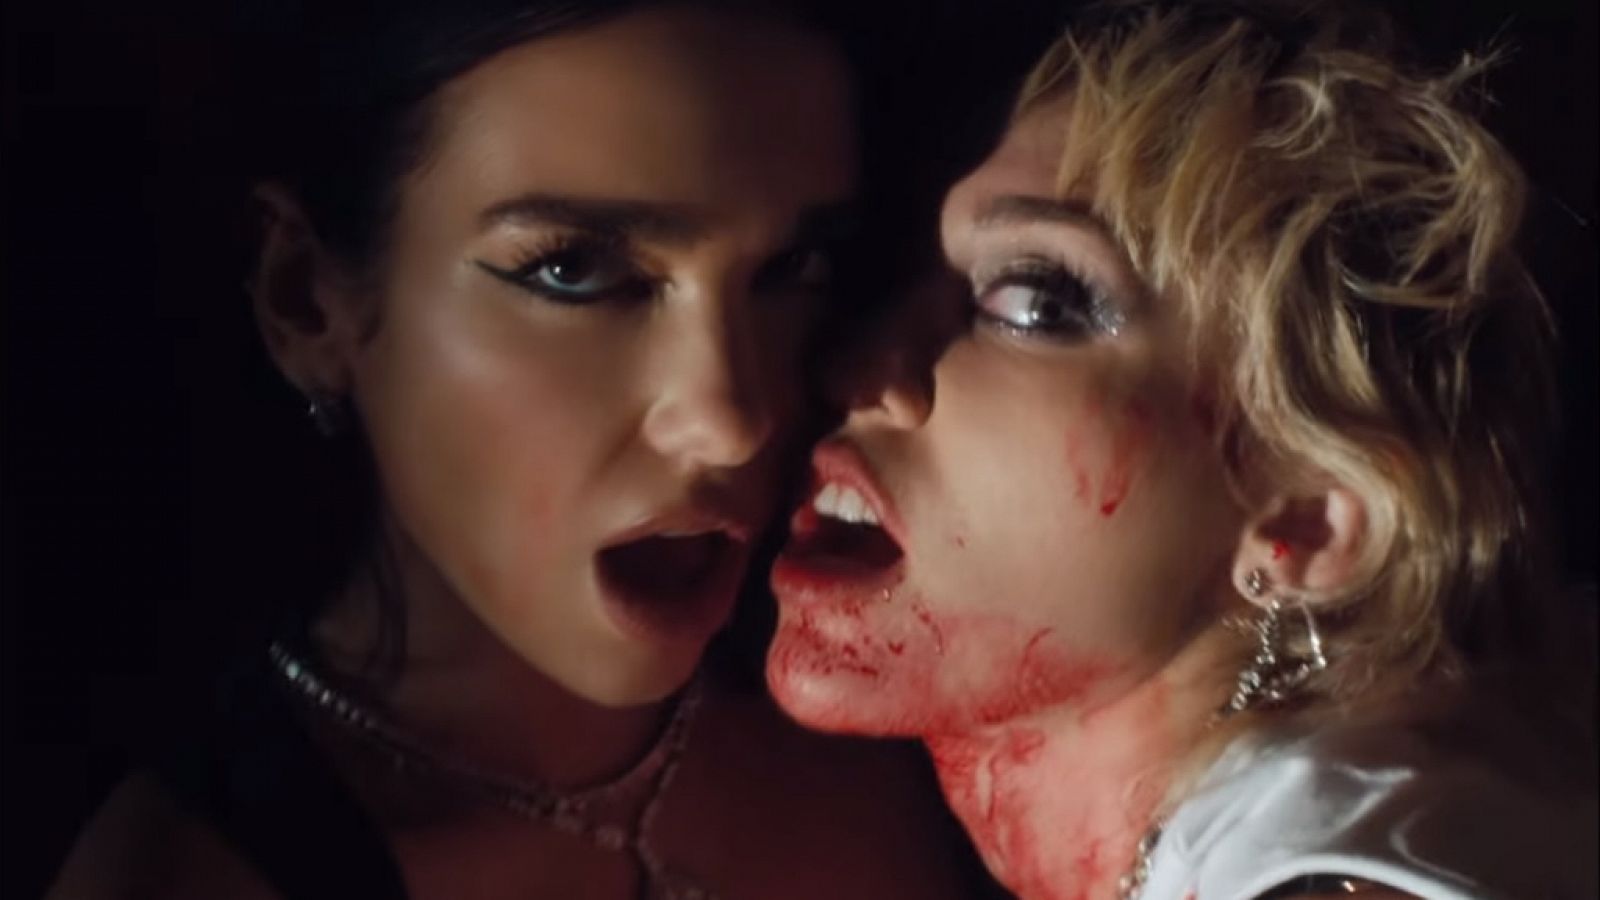  Miley Cyrus y Dua Lipa desbordan sensualidad en el videoclip de "Prisoner"